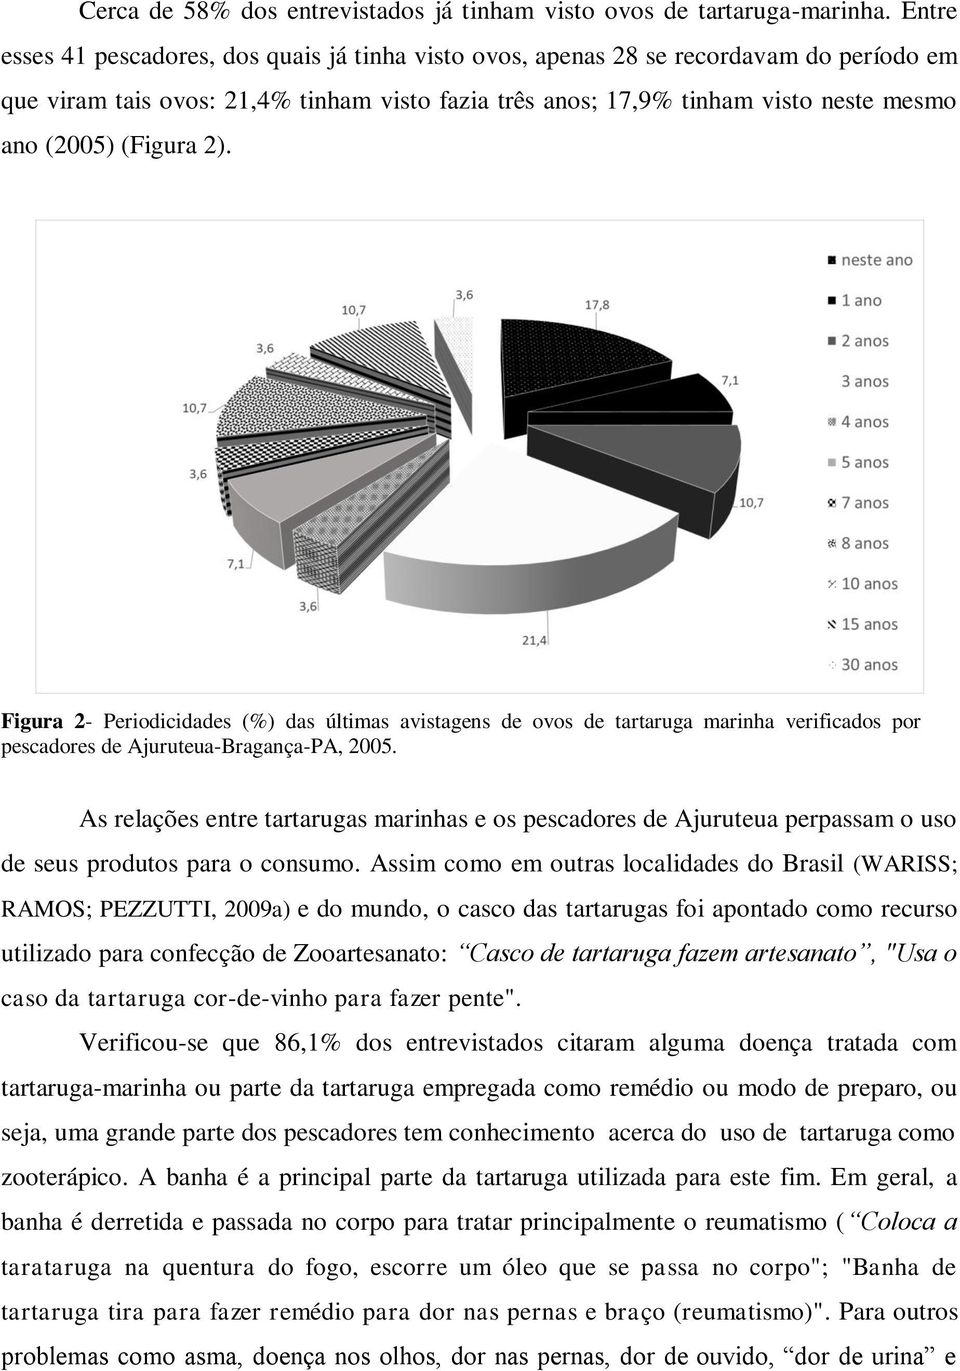 (Figura 2). Figura 2- Periodicidades (%) das últimas avistagens de ovos de tartaruga marinha verificados por pescadores de Ajuruteua-Bragança-PA, 2005.